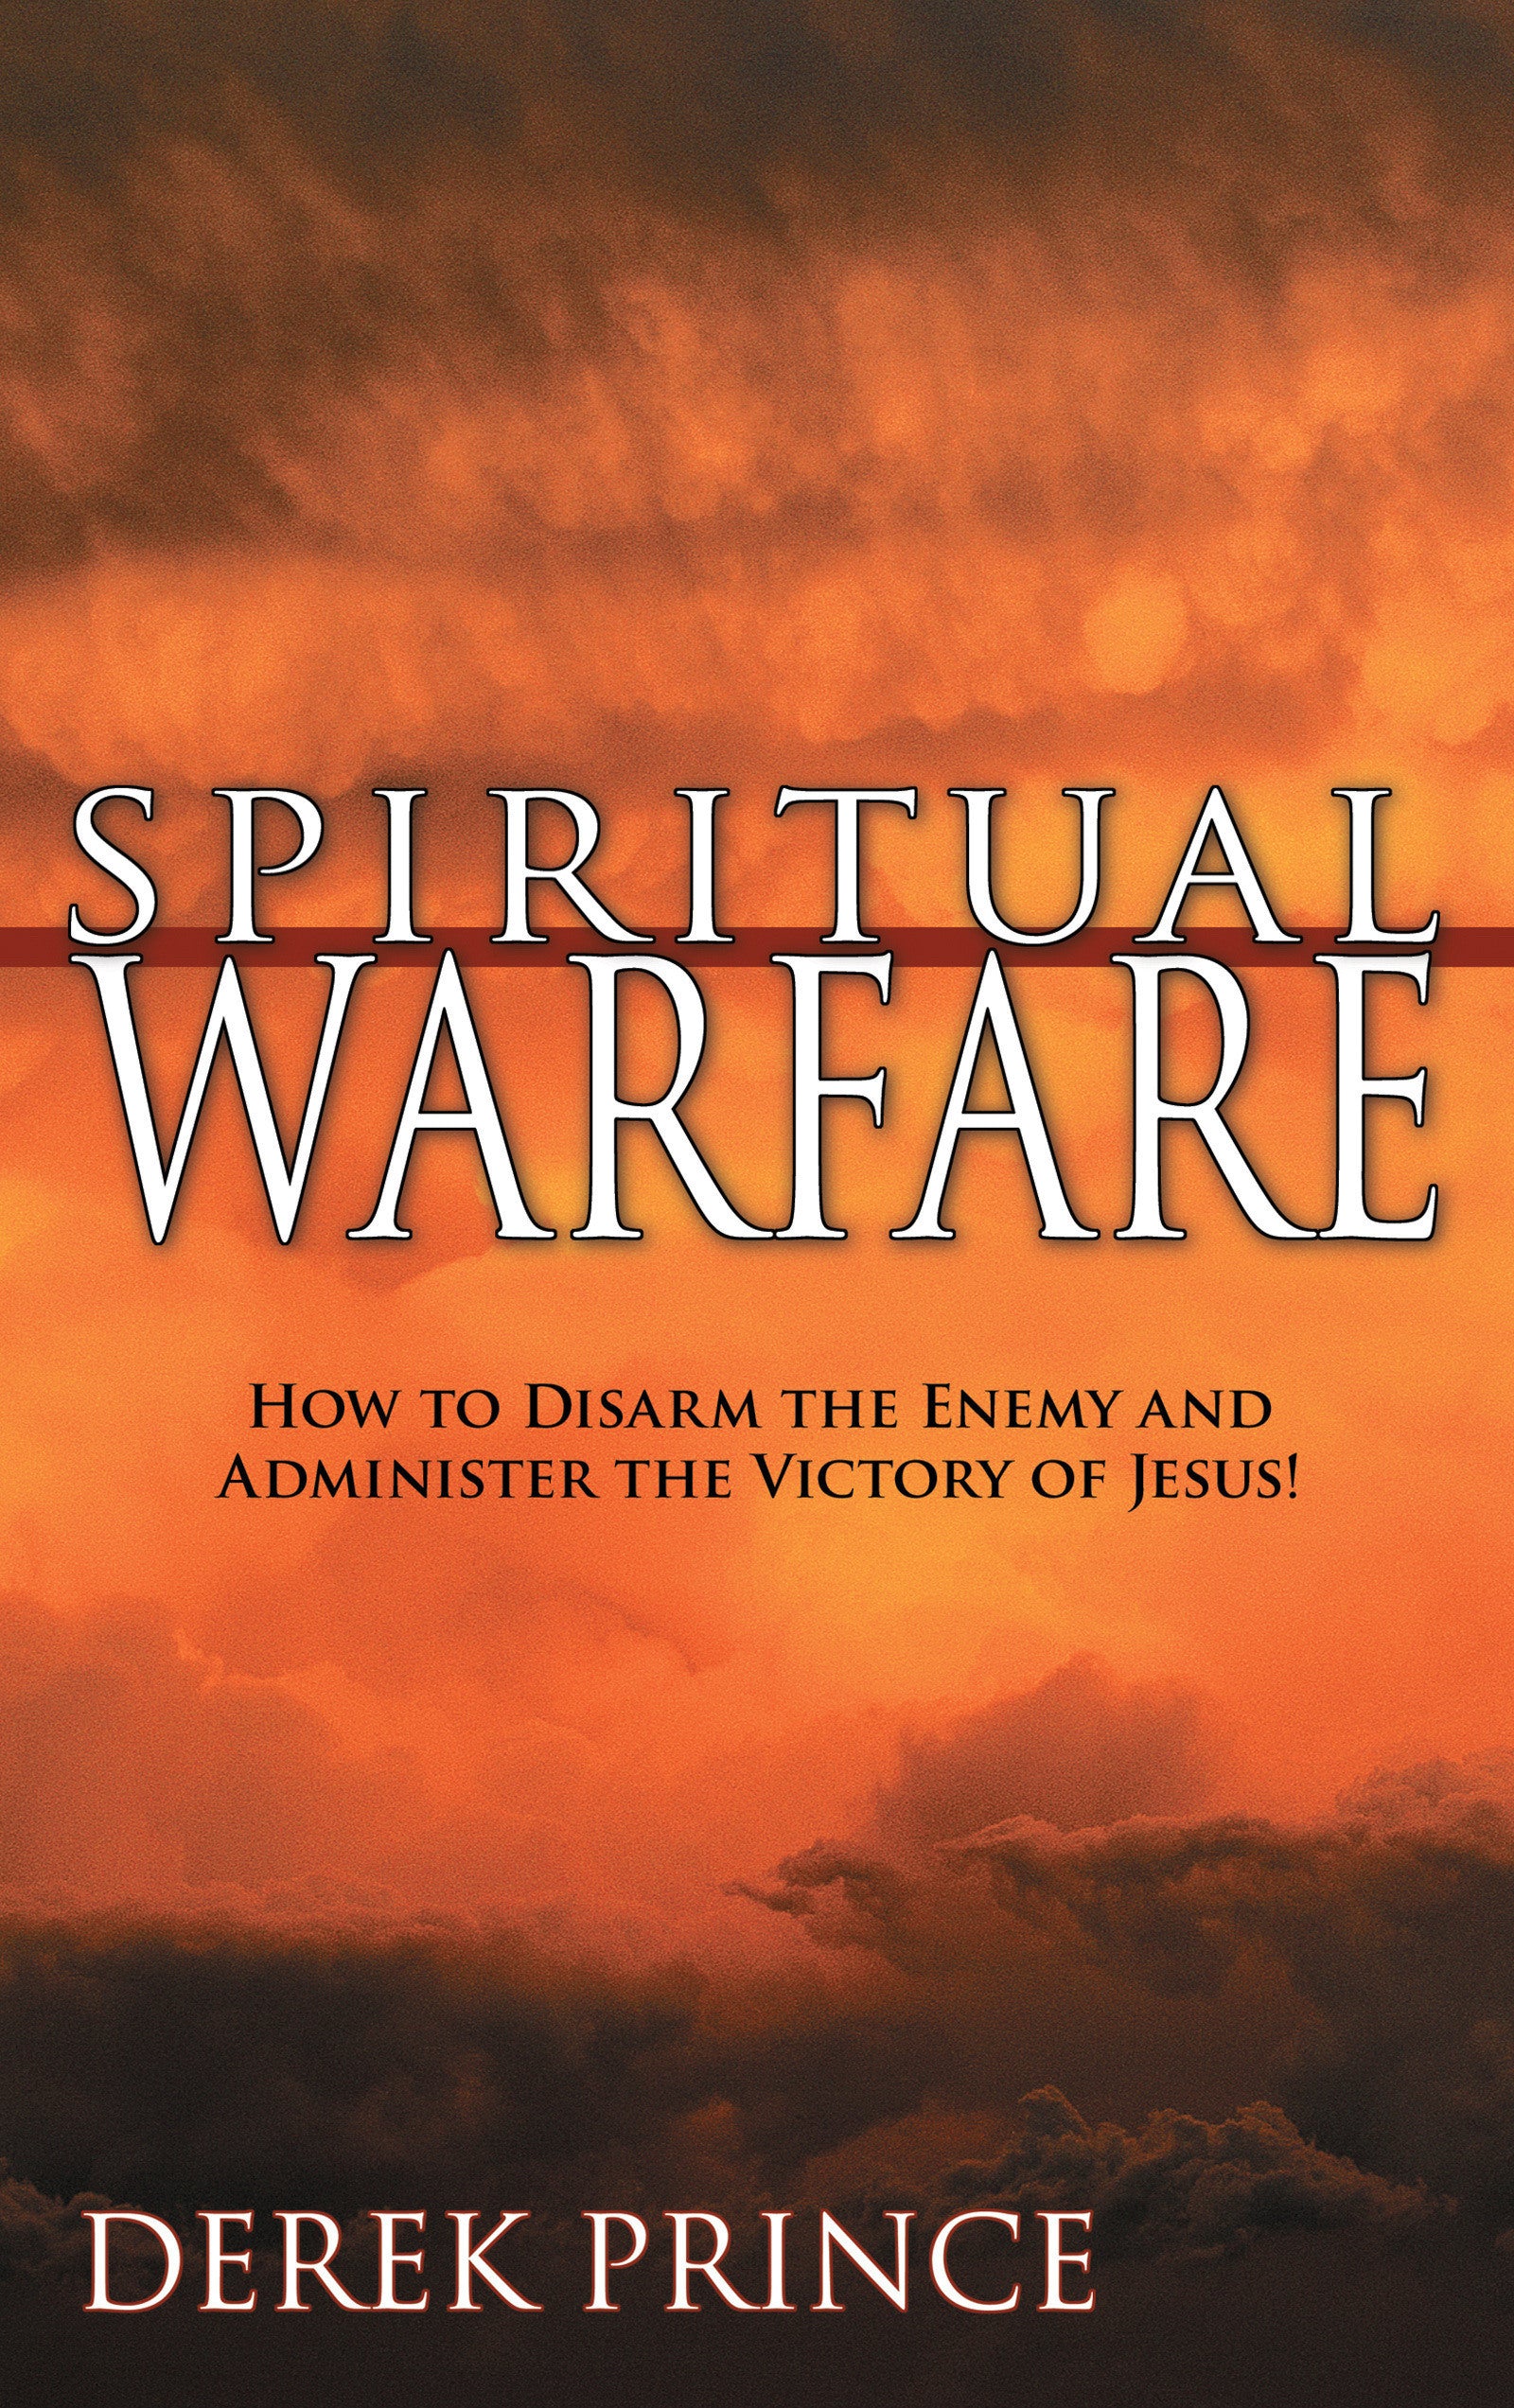 Image of Spiritual Warfare other